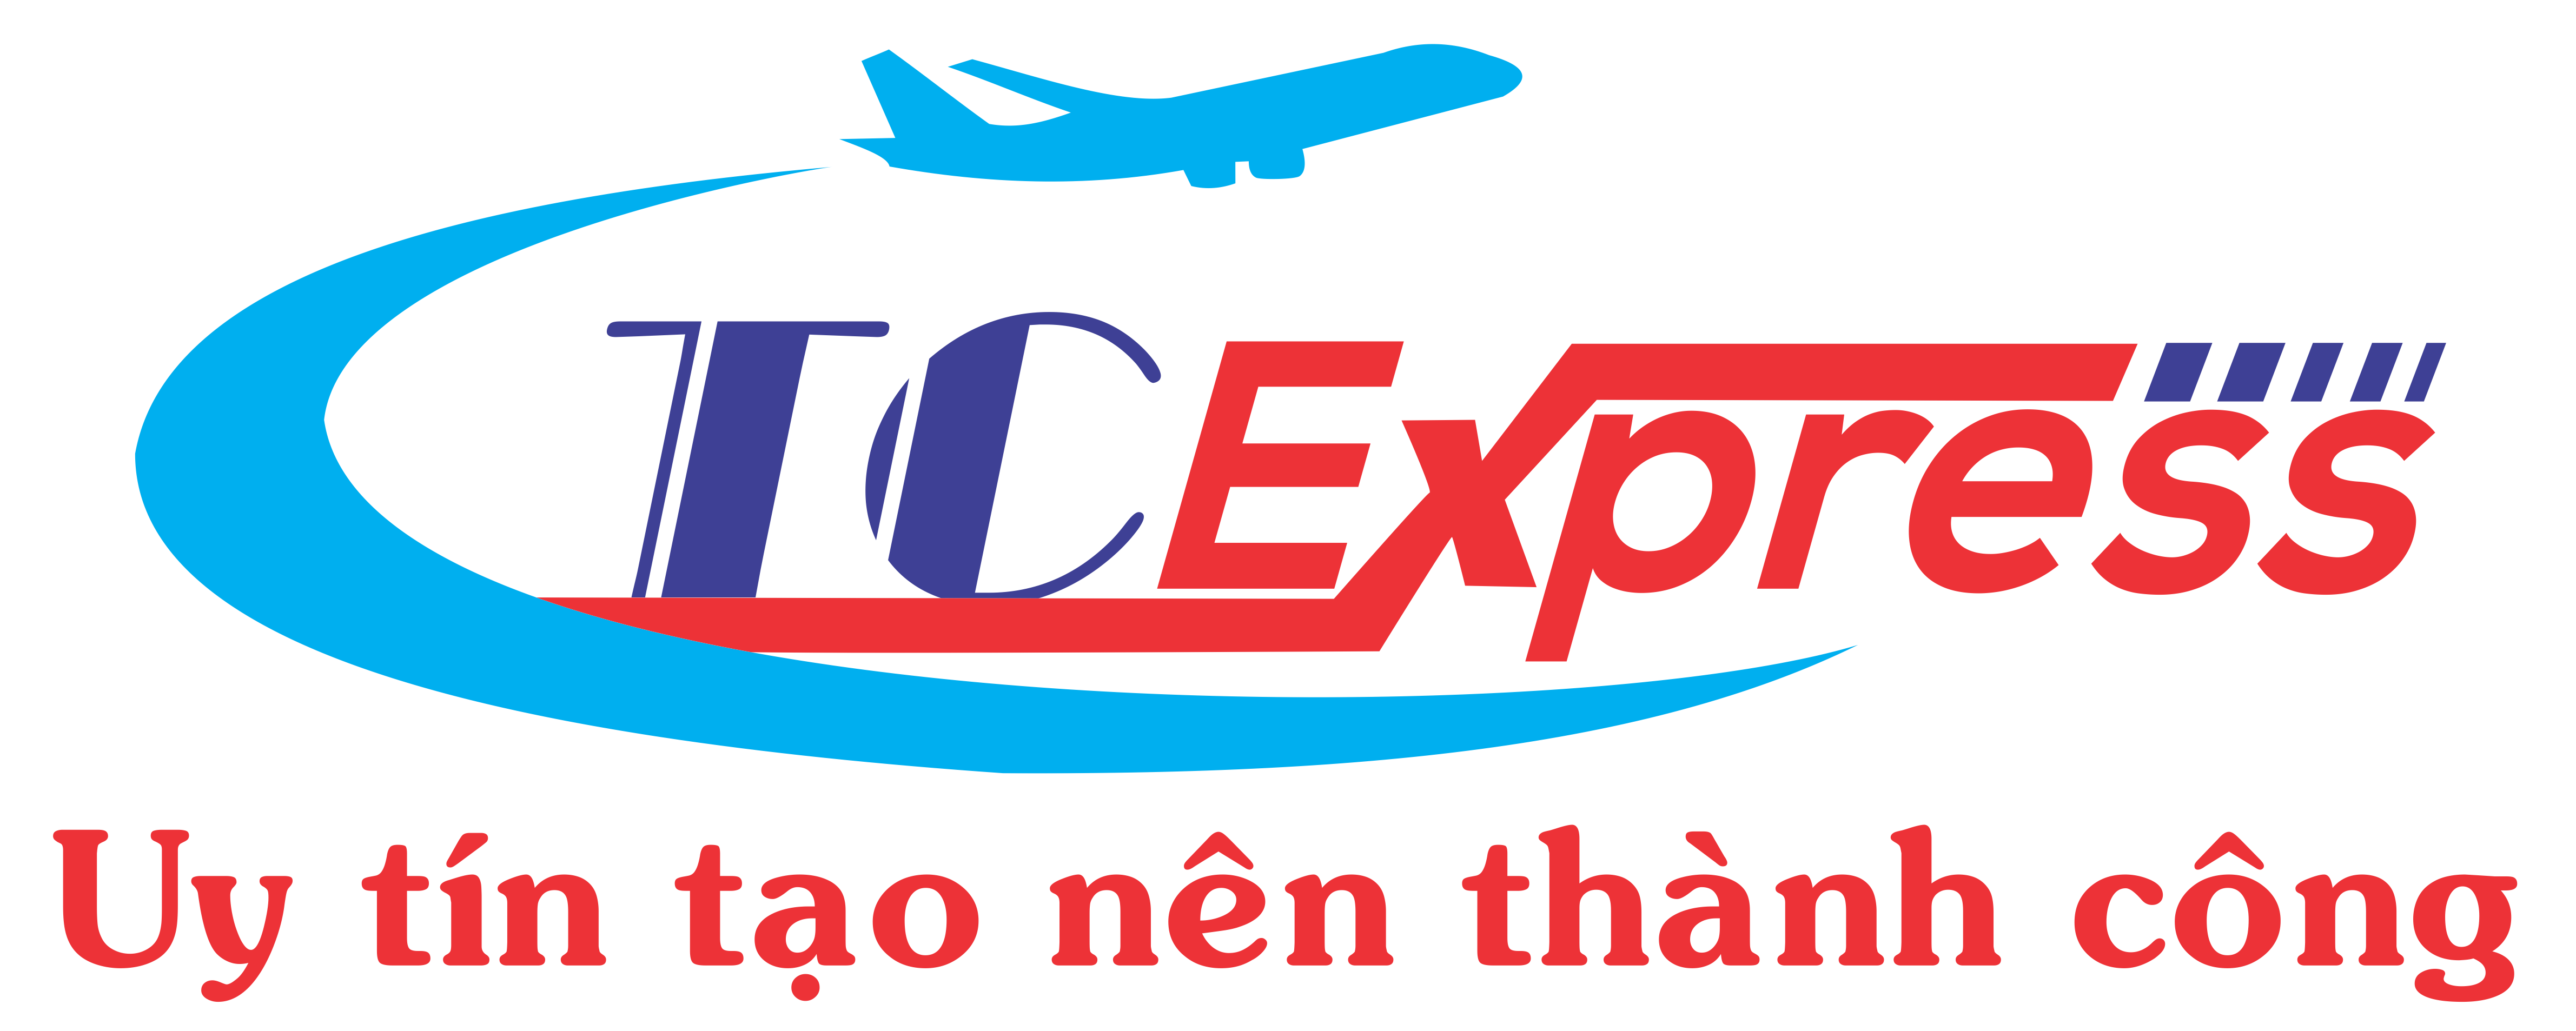 Thành Công Express